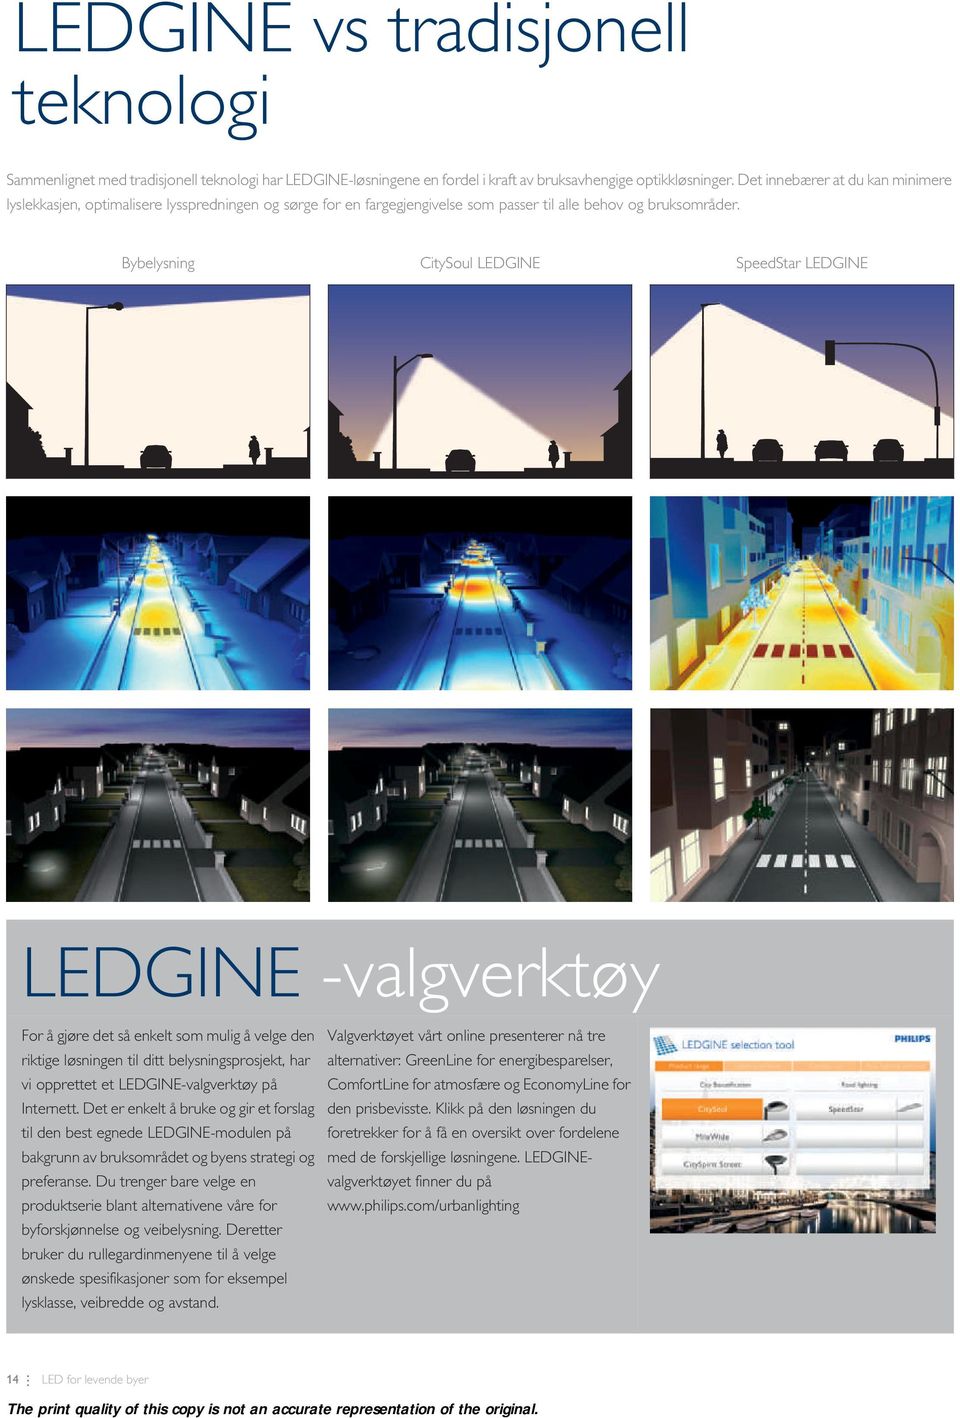 Bybelysning CitySoul LEDGINE SpeedStar LEDGINE LEDGINE -valgverktøy For å gjøre det så enkelt som mulig å velge den riktige løsningen til ditt belysningsprosjekt, har vi opprettet et